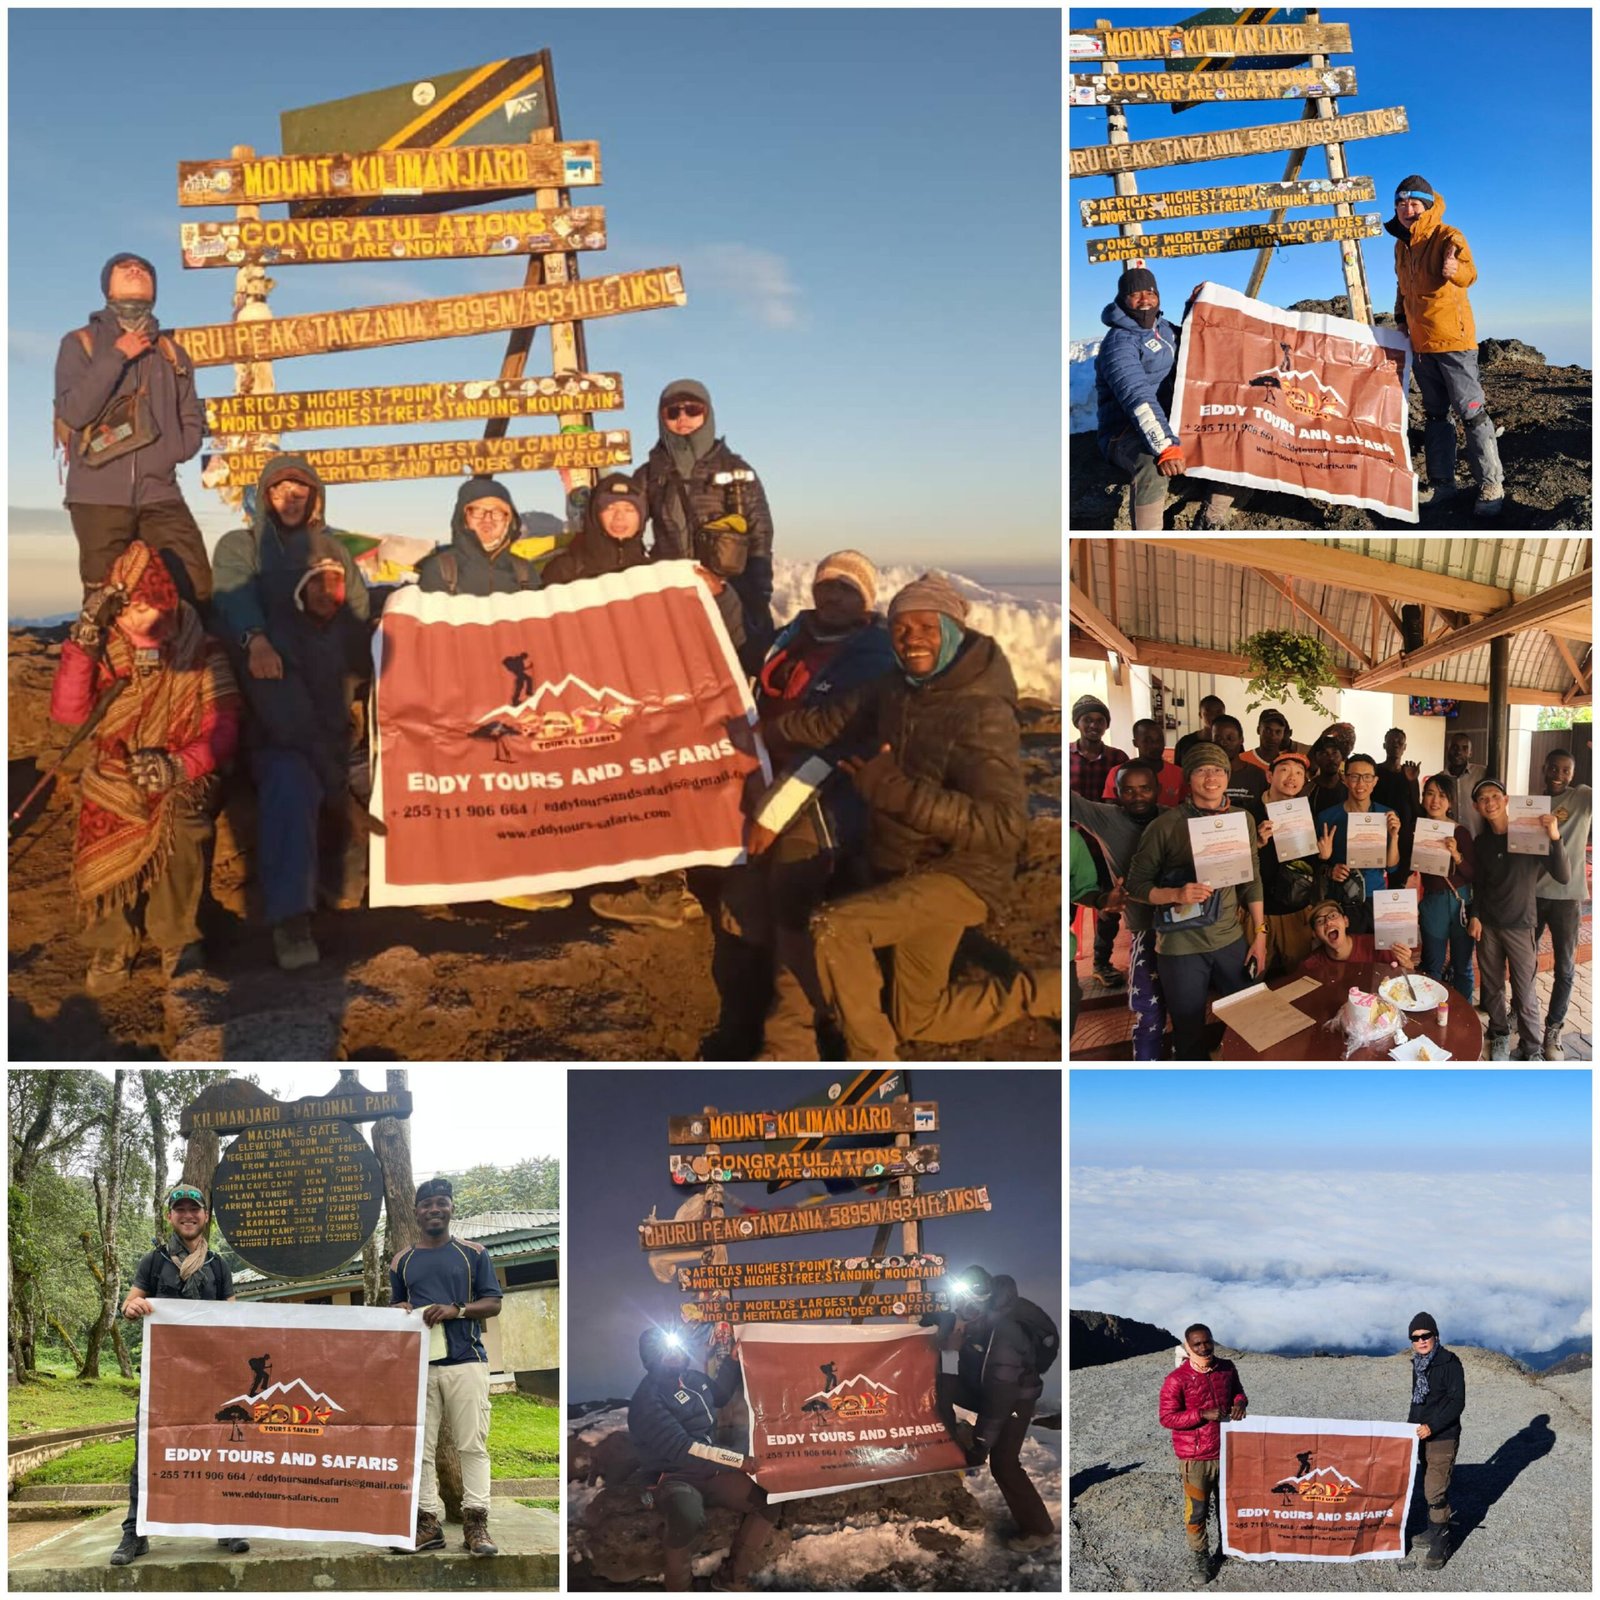 #1 Kilimanjaro climbing company in Tanzania - Eddy Tours and safaris